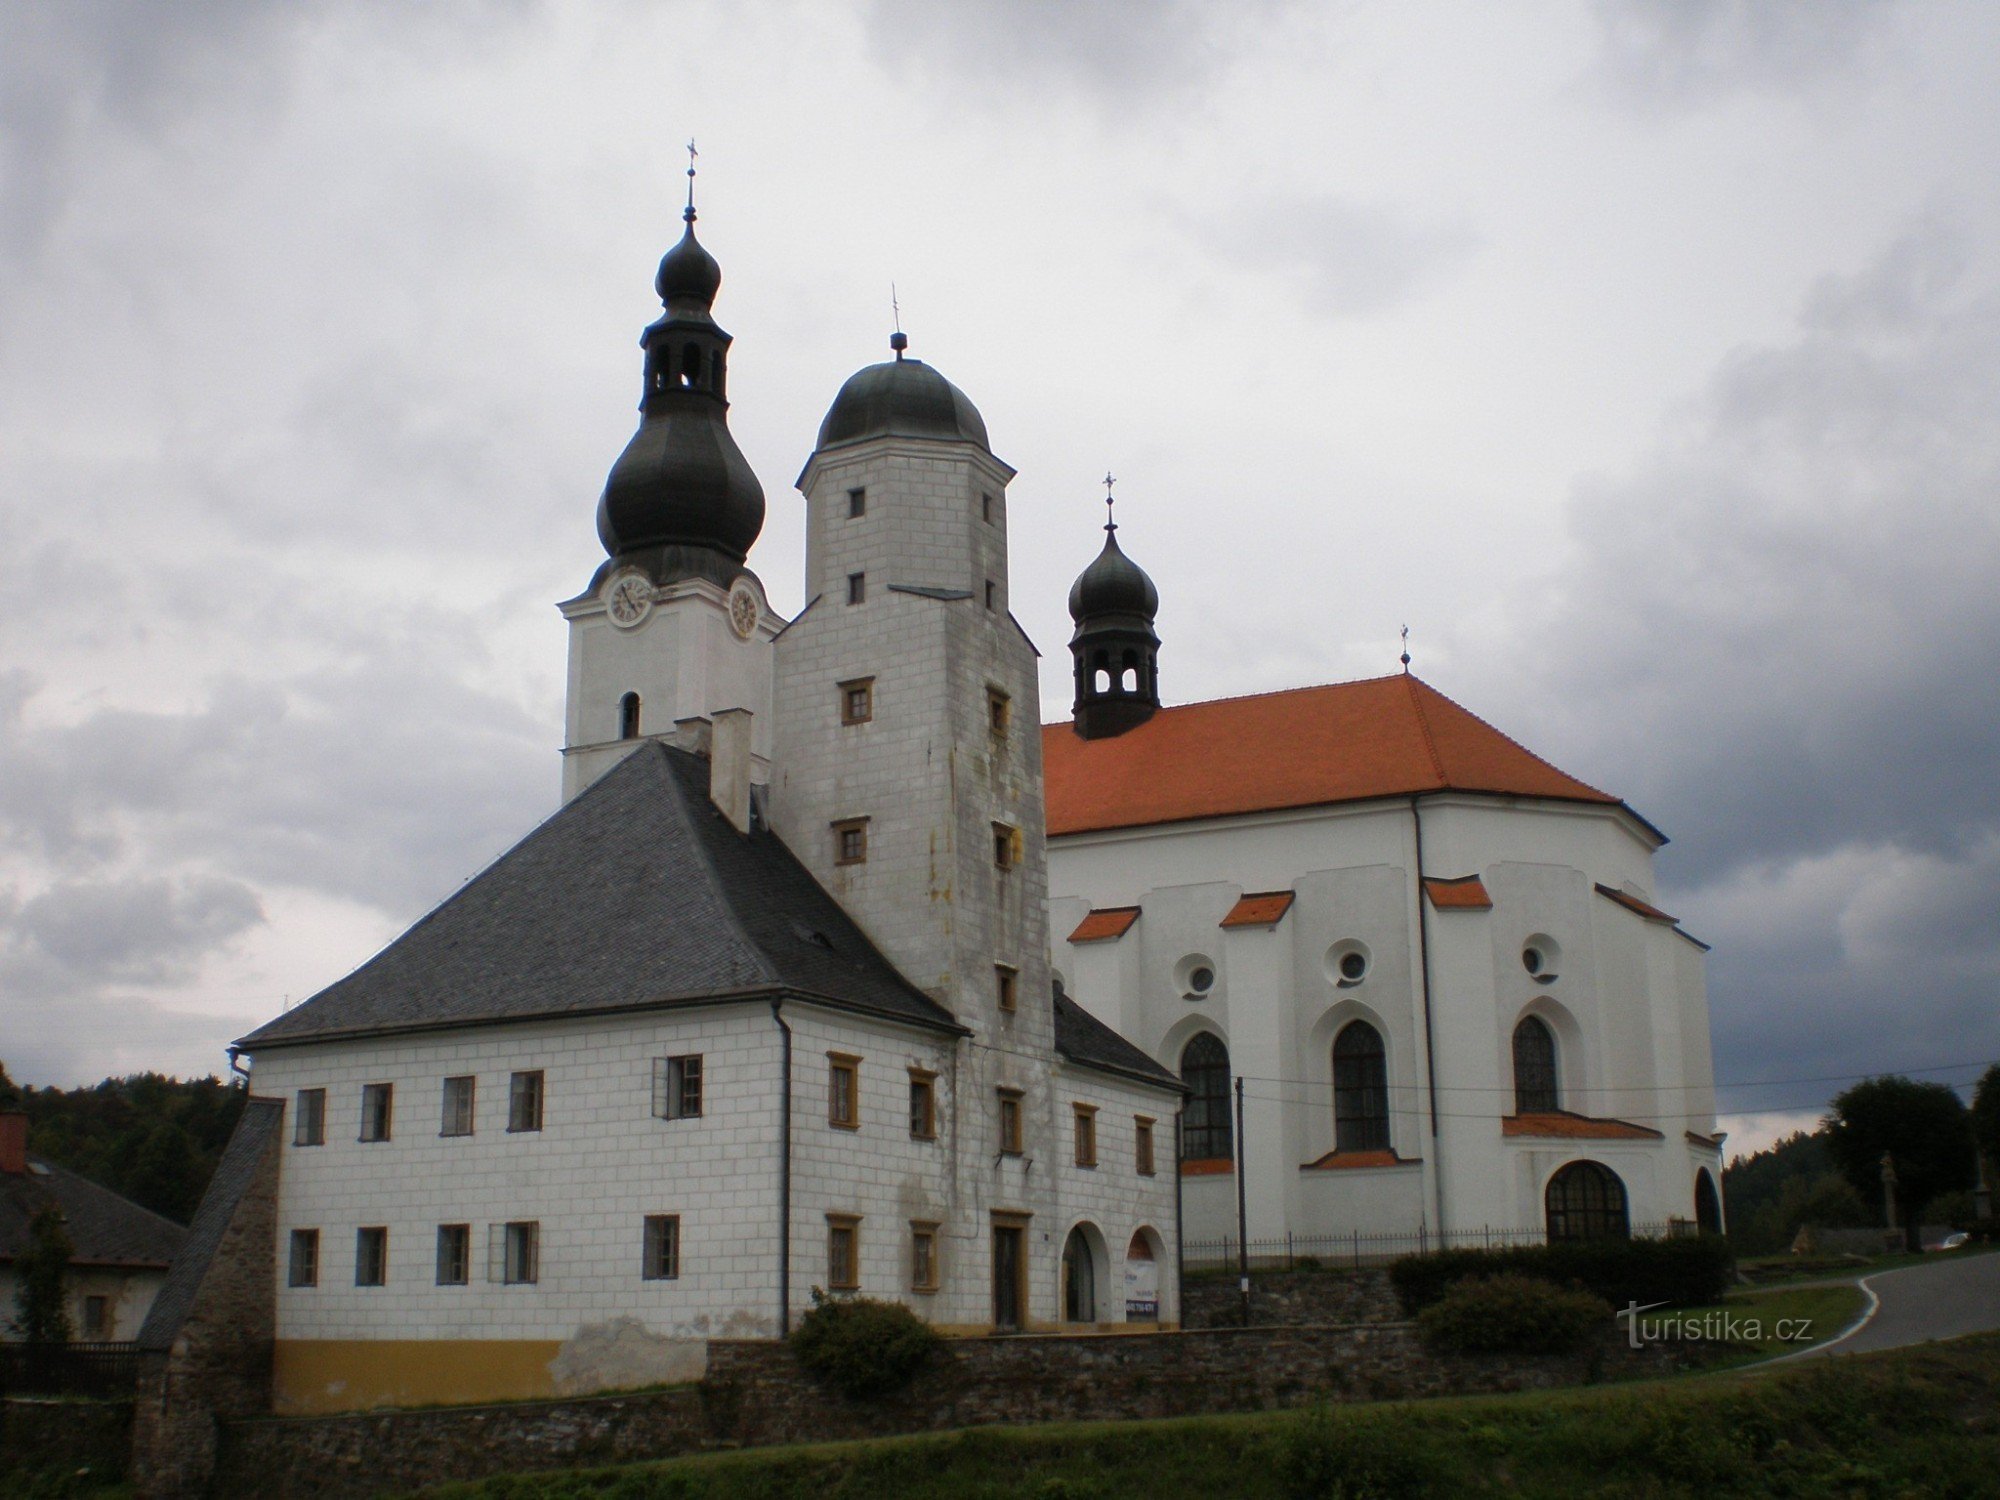 Branná - lâu đài và nhà thờ